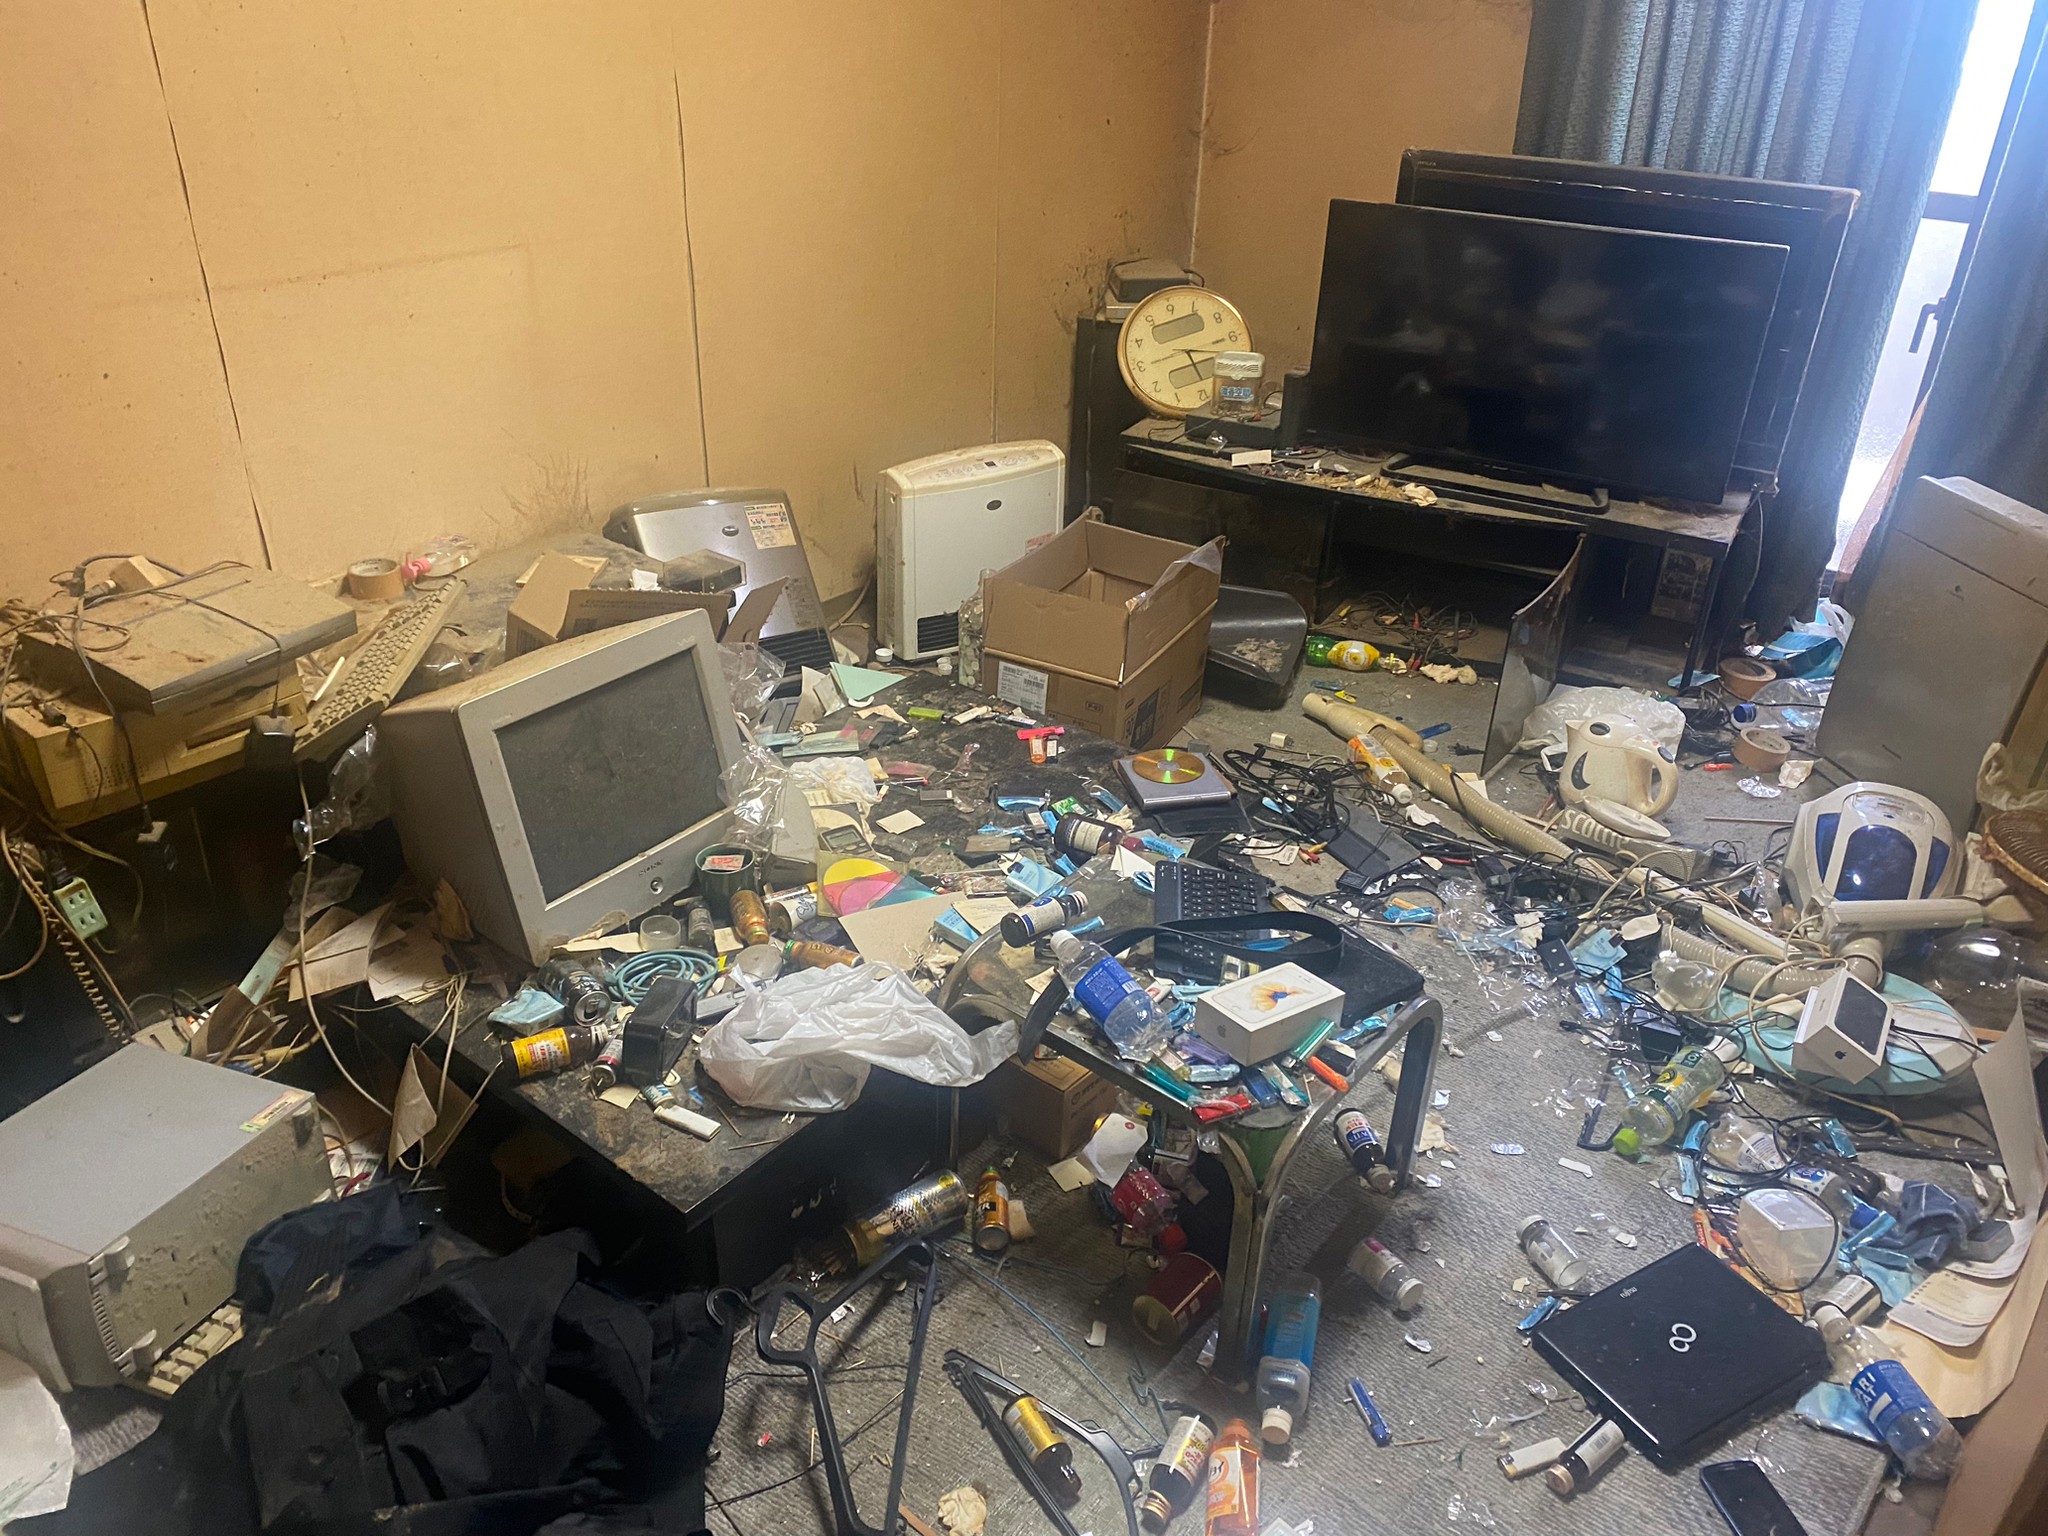 テーブル、テレビ、デスクトップパソコン、ノートパソコン、プリンター、ストーブ、生活ゴミの回収前の状態